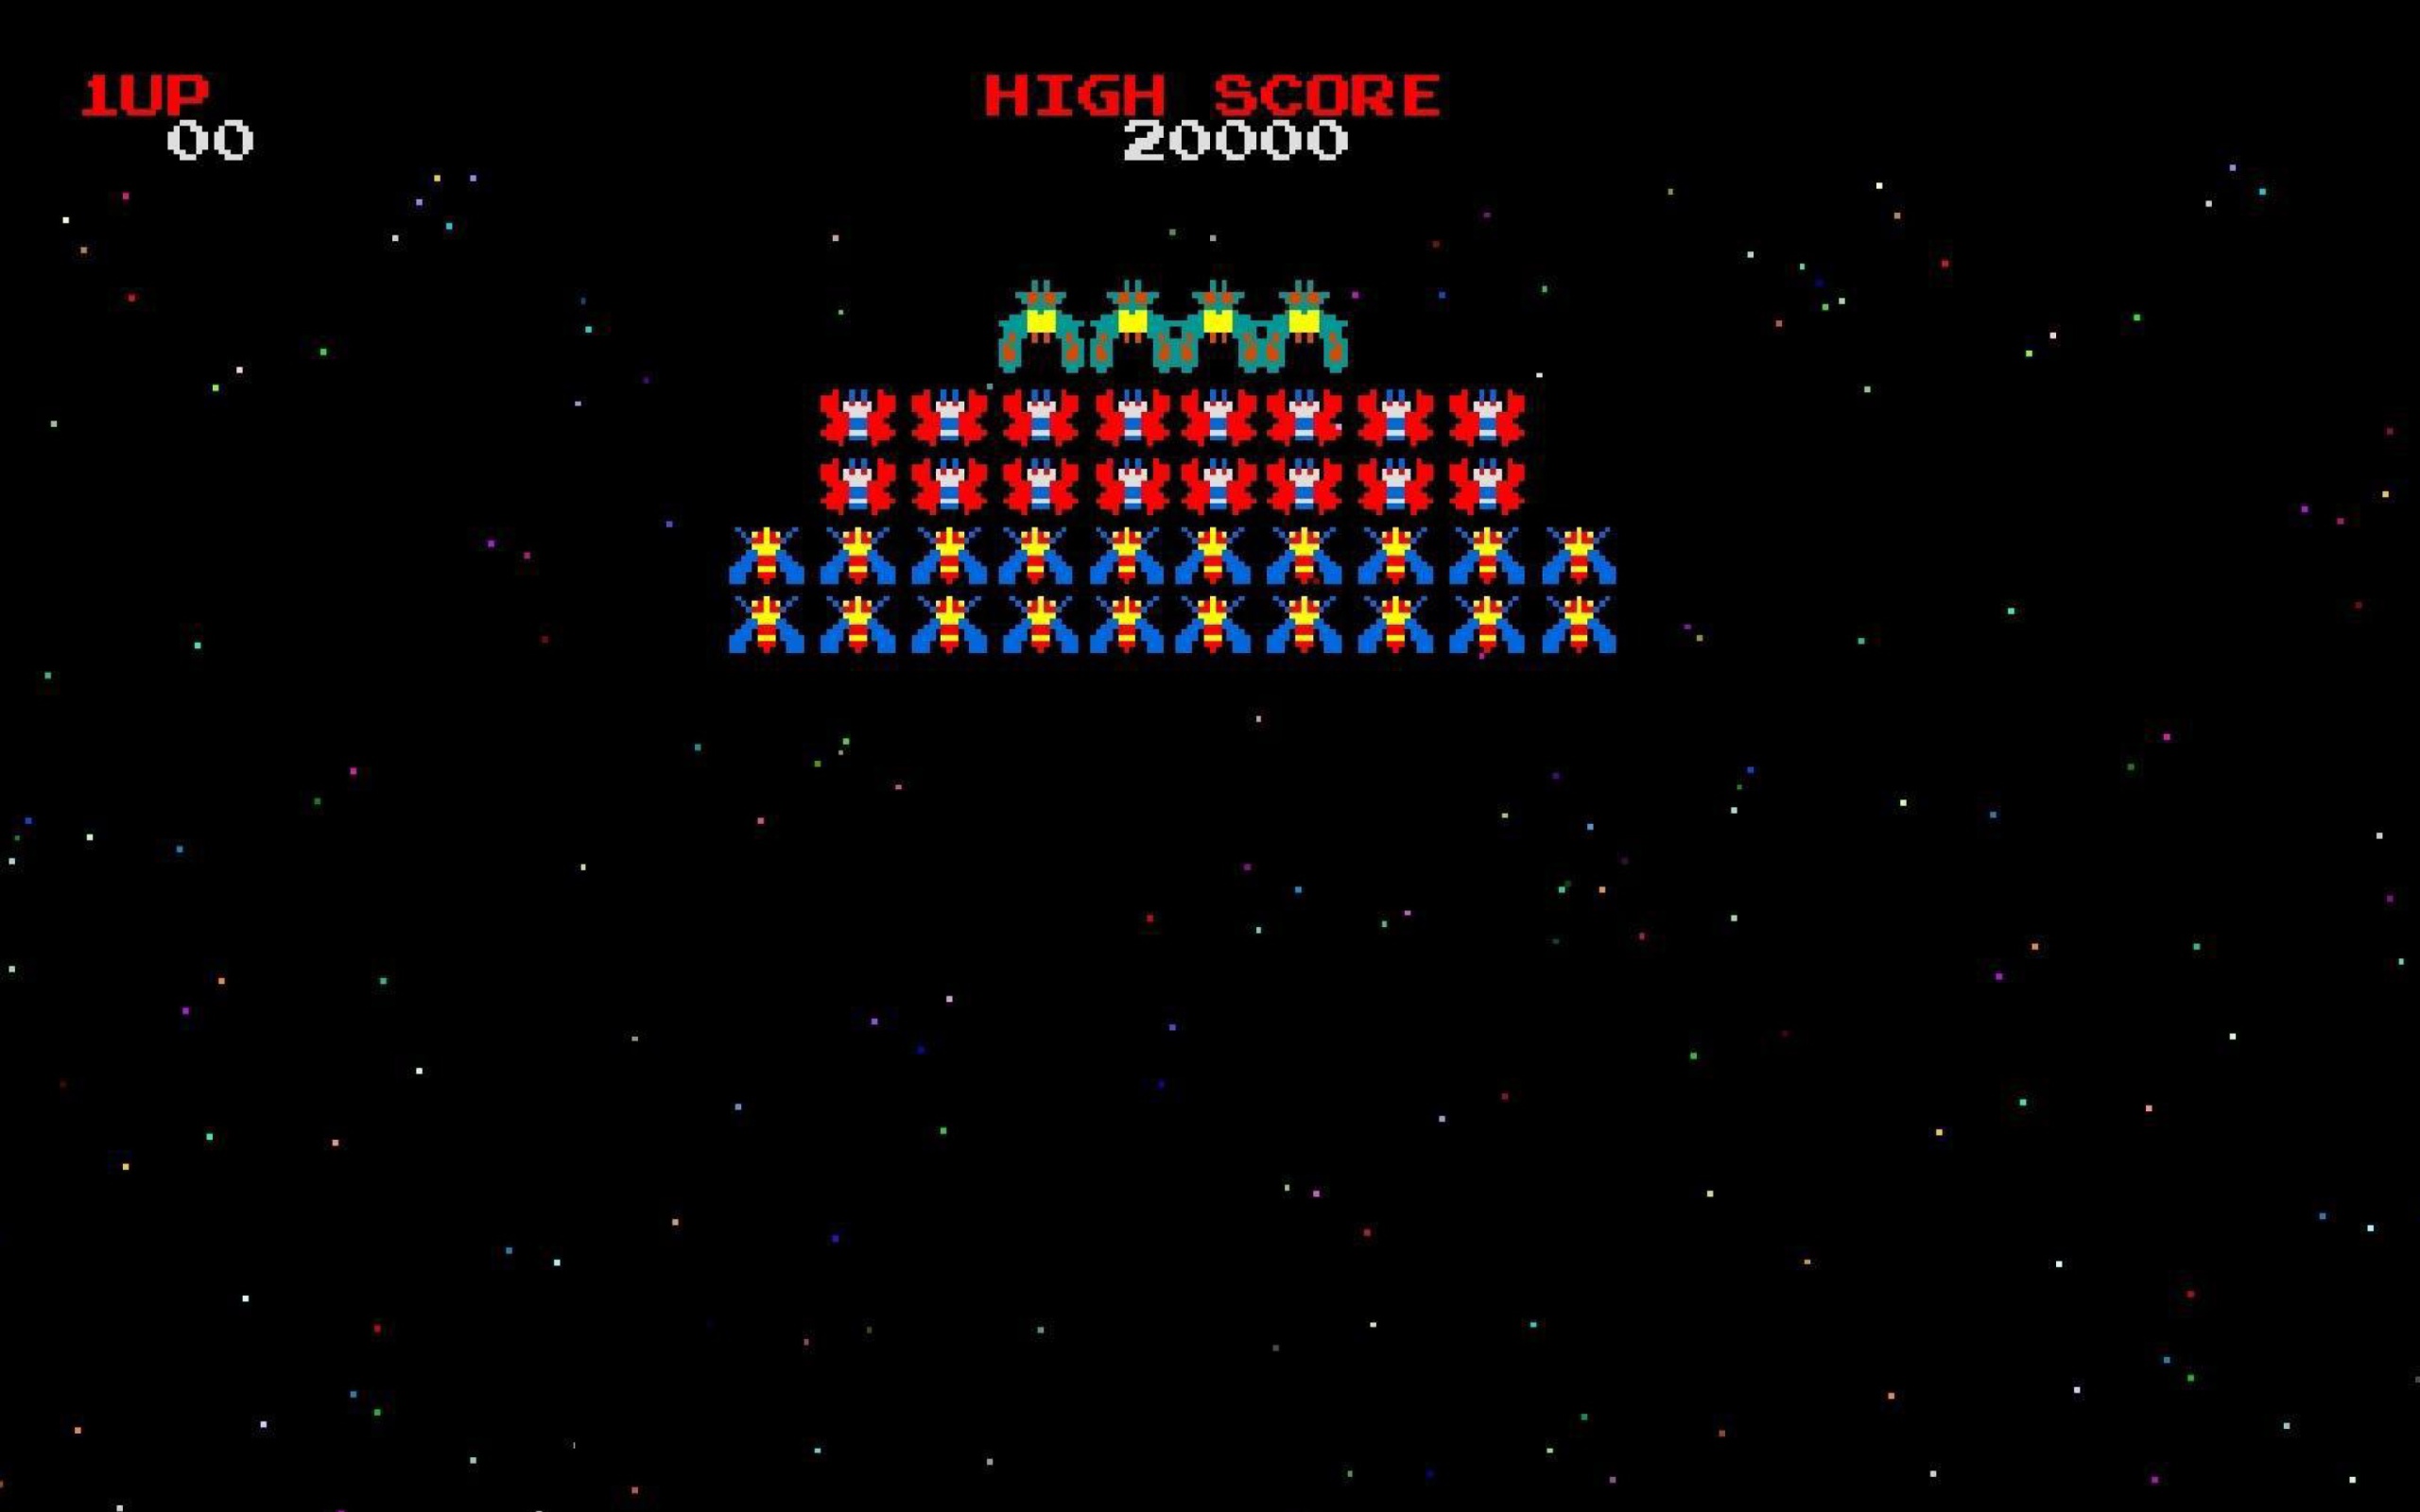 Das Galaxian Galaga Nintendo Arcade Game Wallpaper 2560x1600